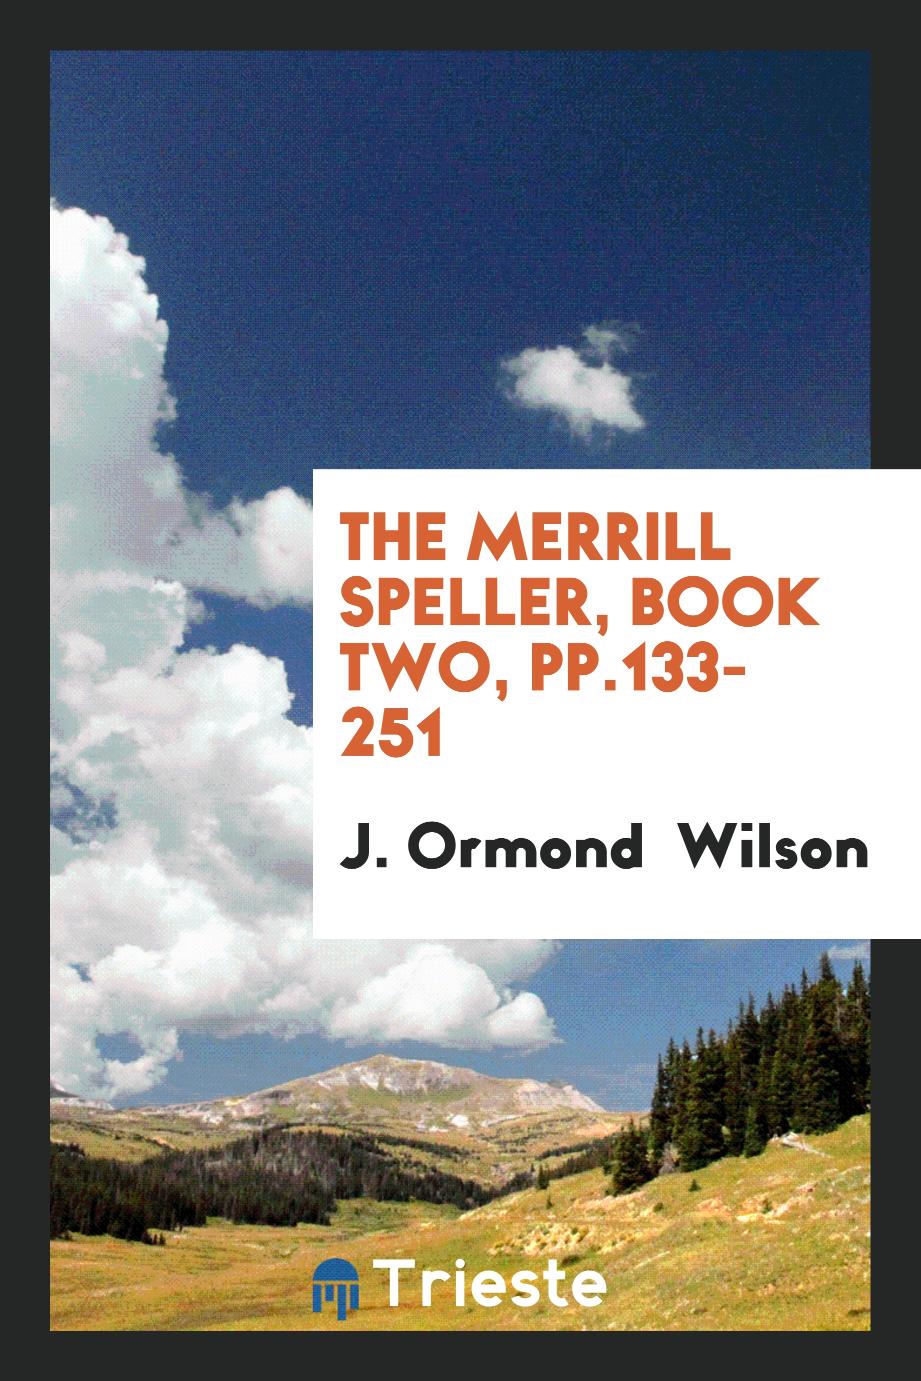 The Merrill Speller, Book Two, pp.133-251